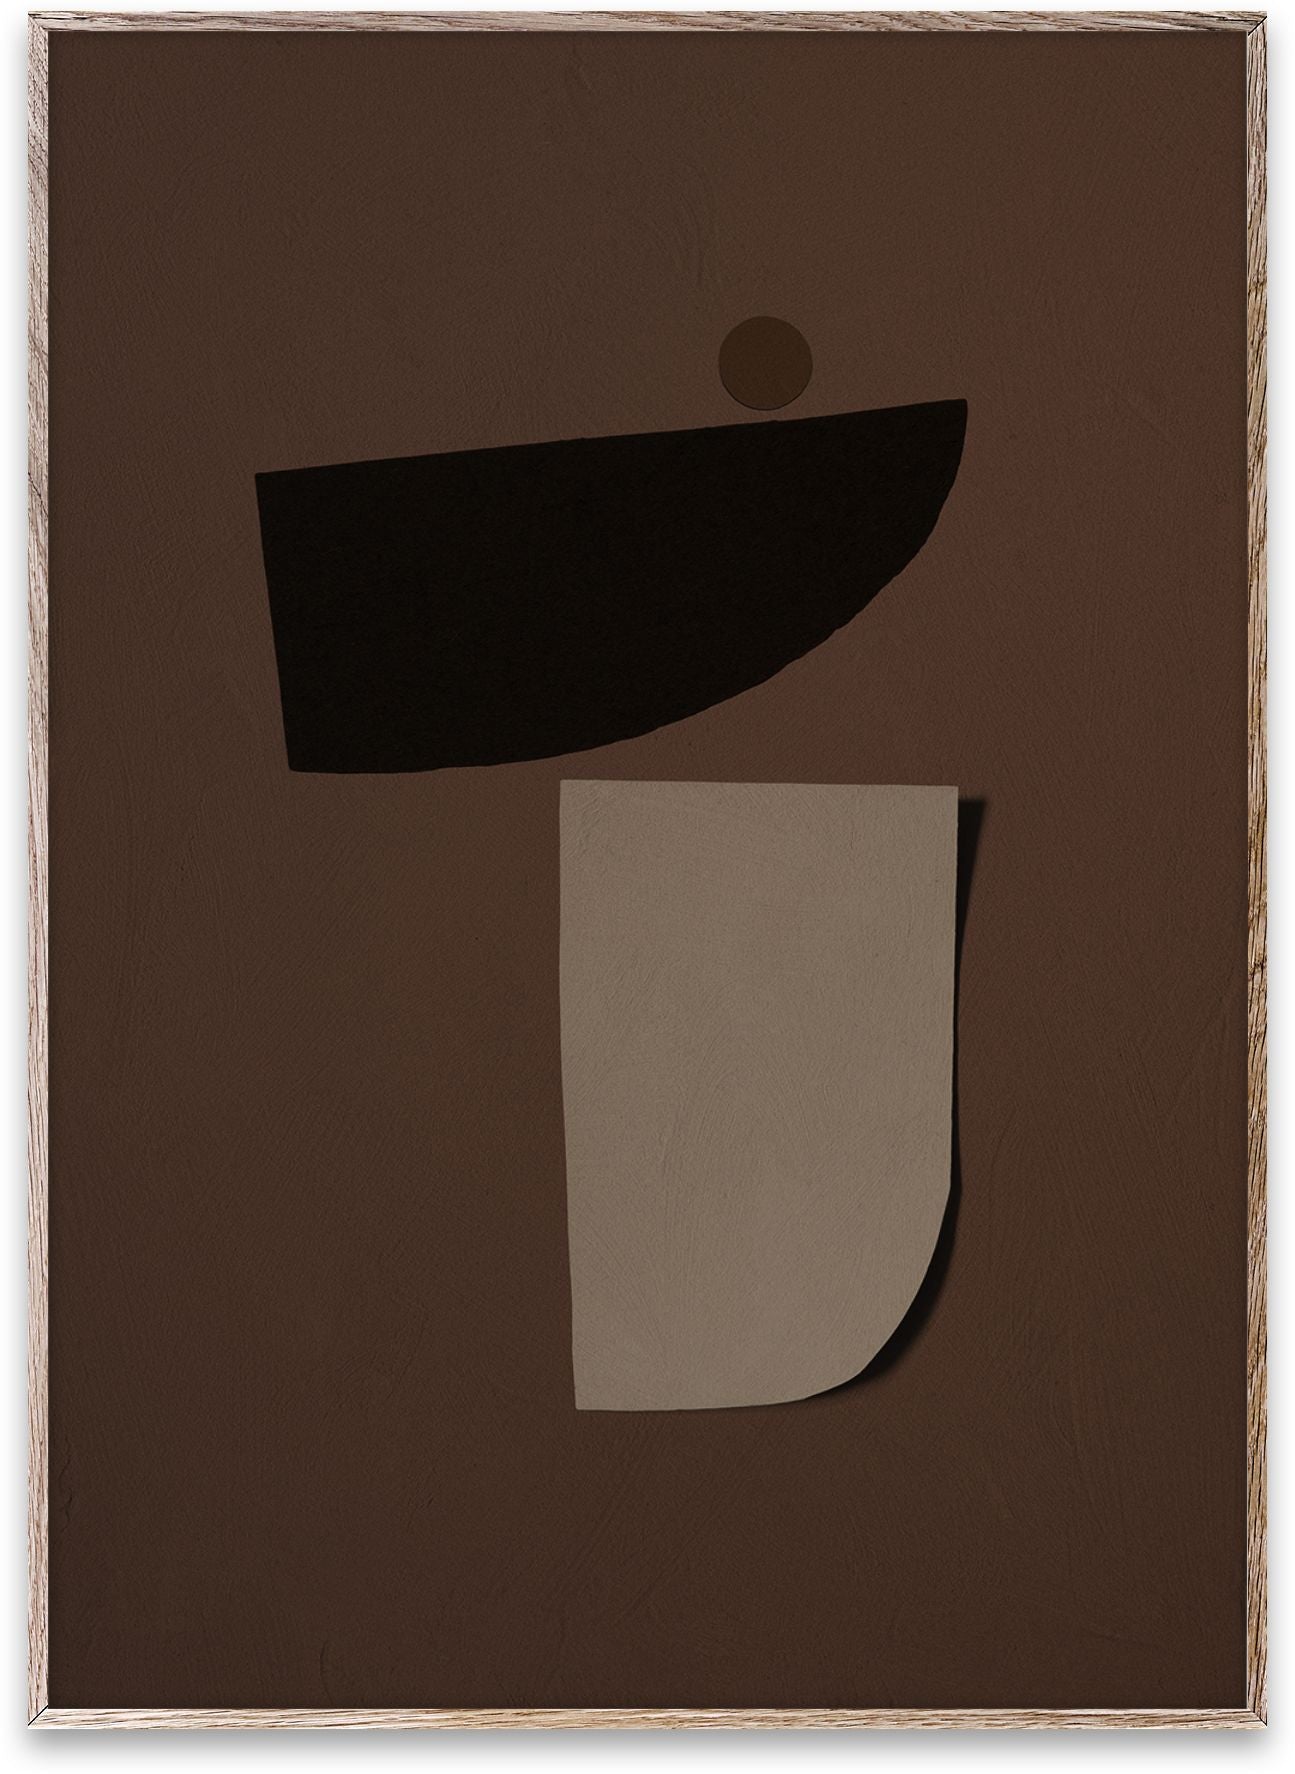 Pappers kollektiv tipppunkt 03 -affisch, 30x40 cm